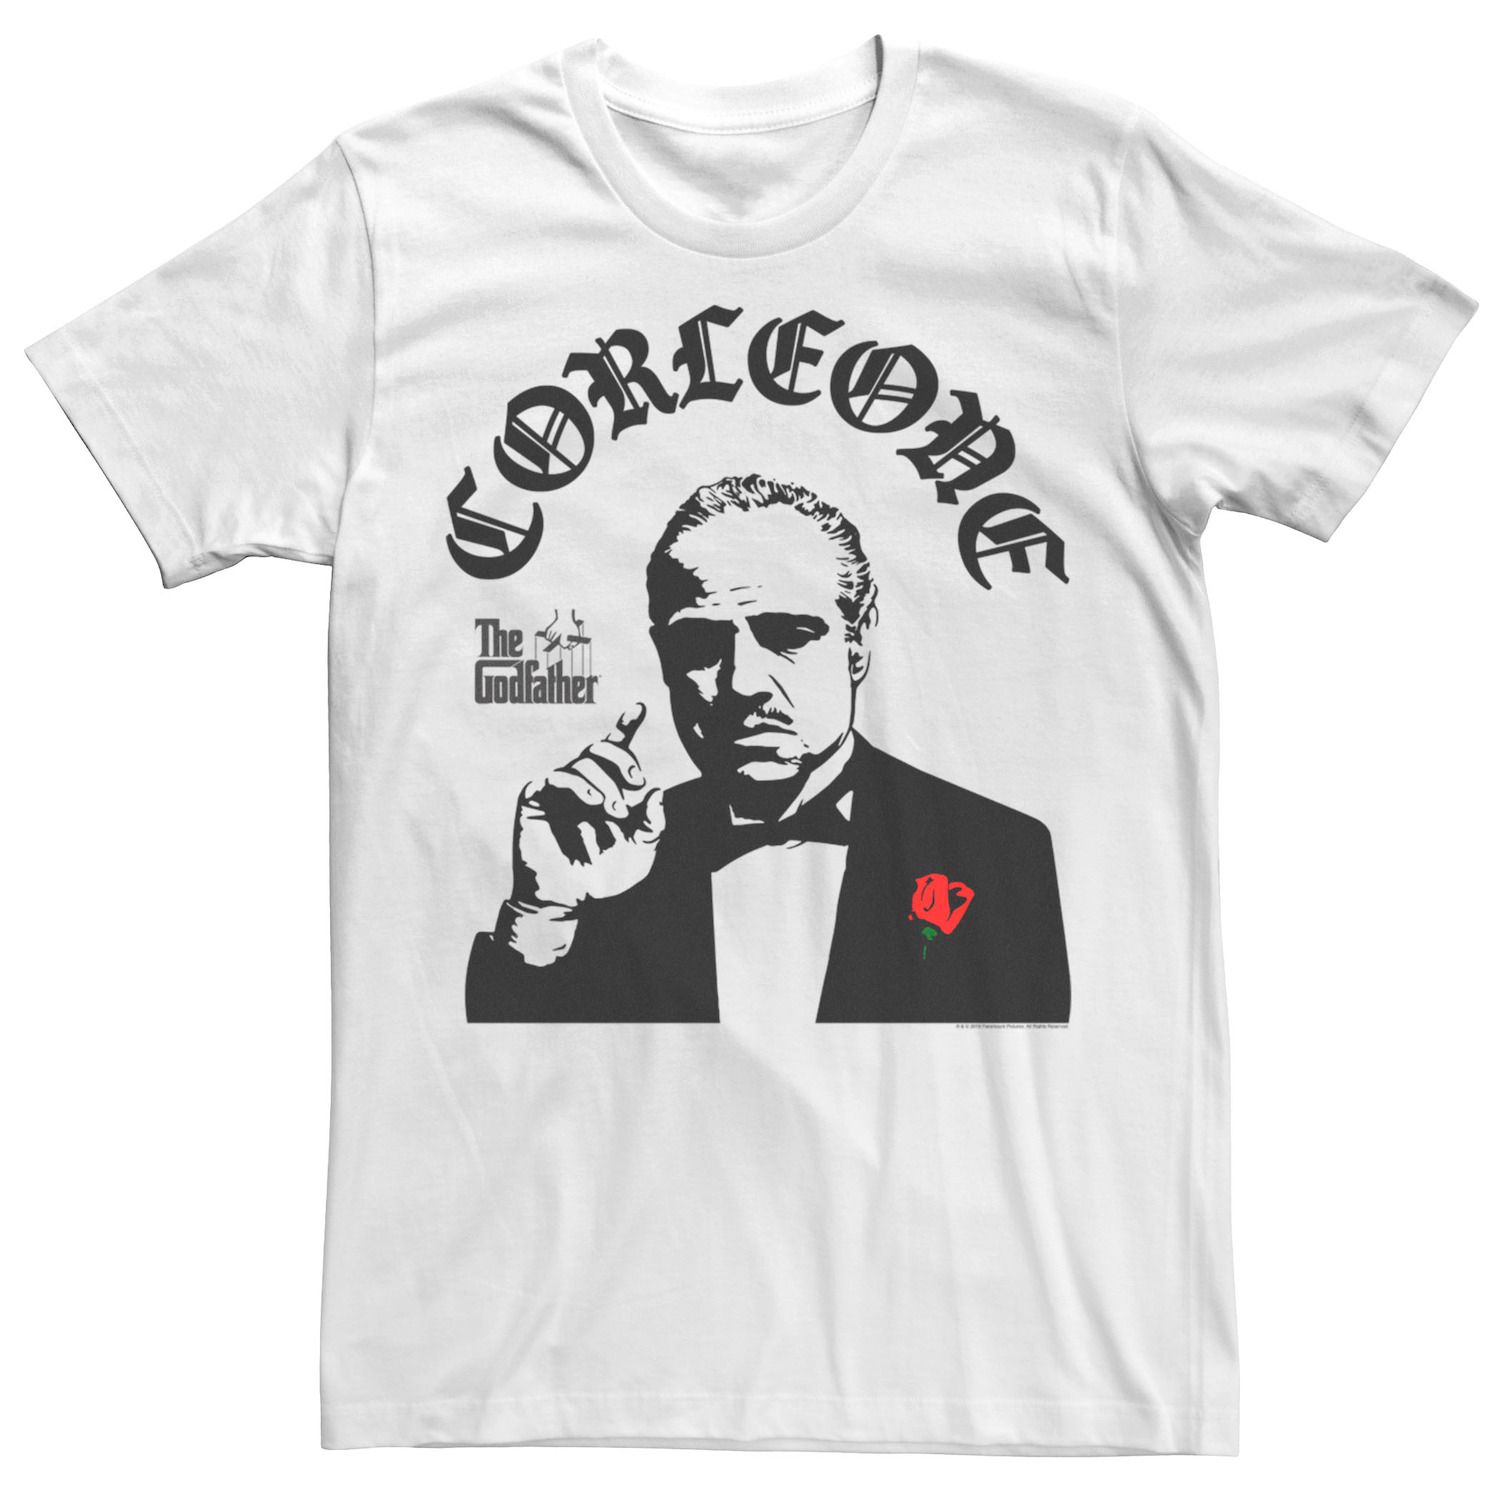 цена Мужская футболка с портретом Godfather Corleone Licensed Character